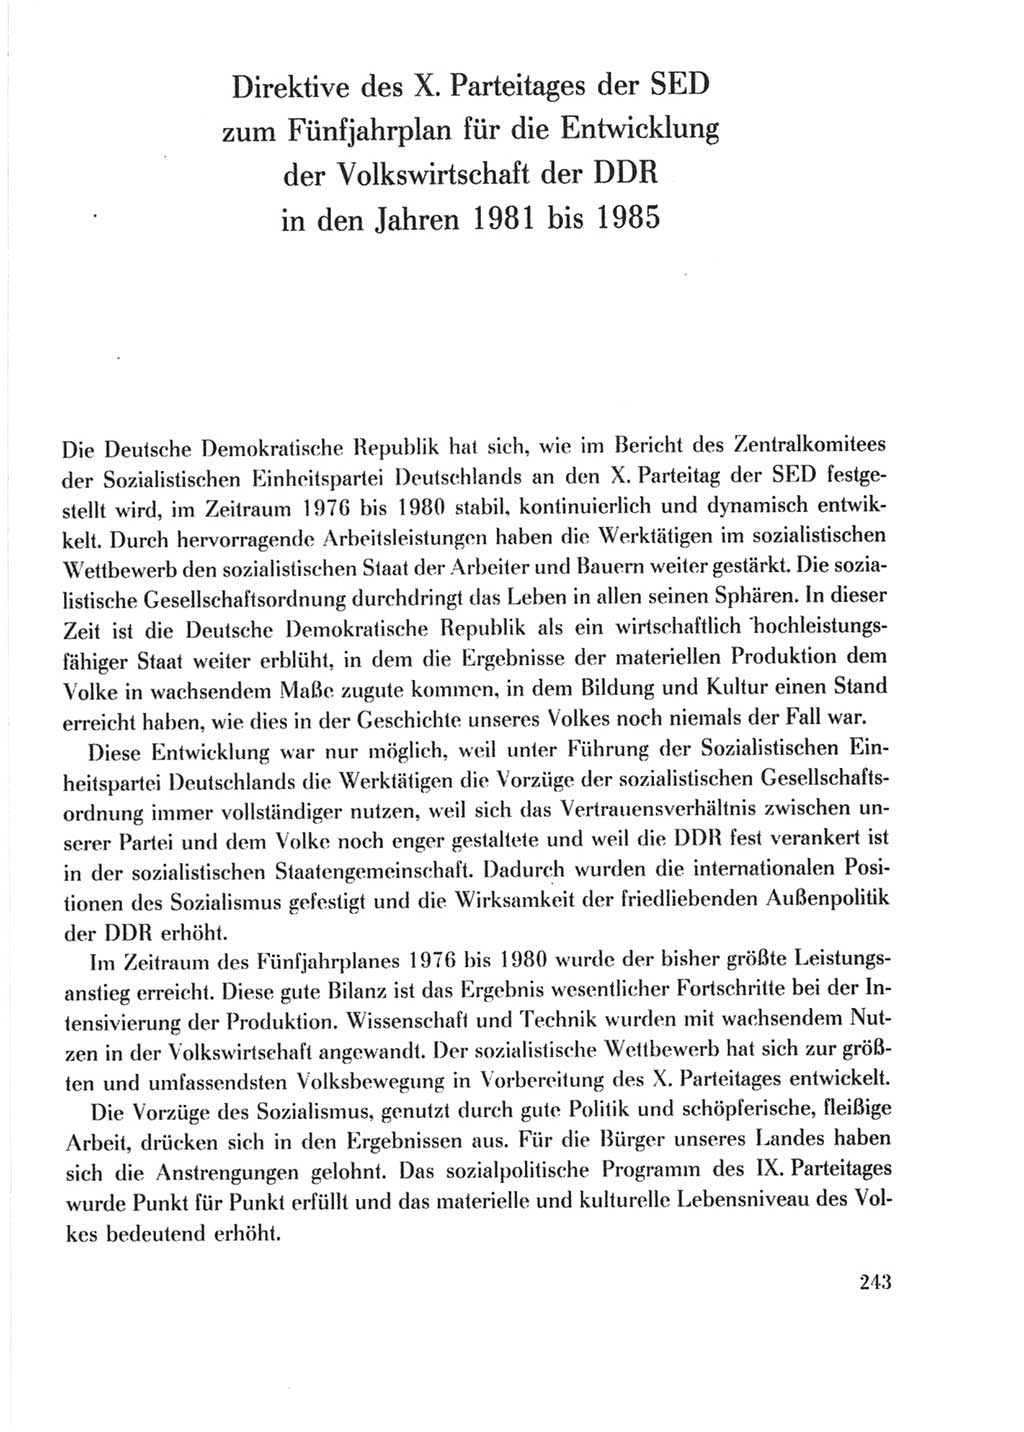 Protokoll der Verhandlungen des Ⅹ. Parteitages der Sozialistischen Einheitspartei Deutschlands (SED) [Deutsche Demokratische Republik (DDR)] 1981, Band 2, Seite 243 (Prot. Verh. Ⅹ. PT SED DDR 1981, Bd. 2, S. 243)